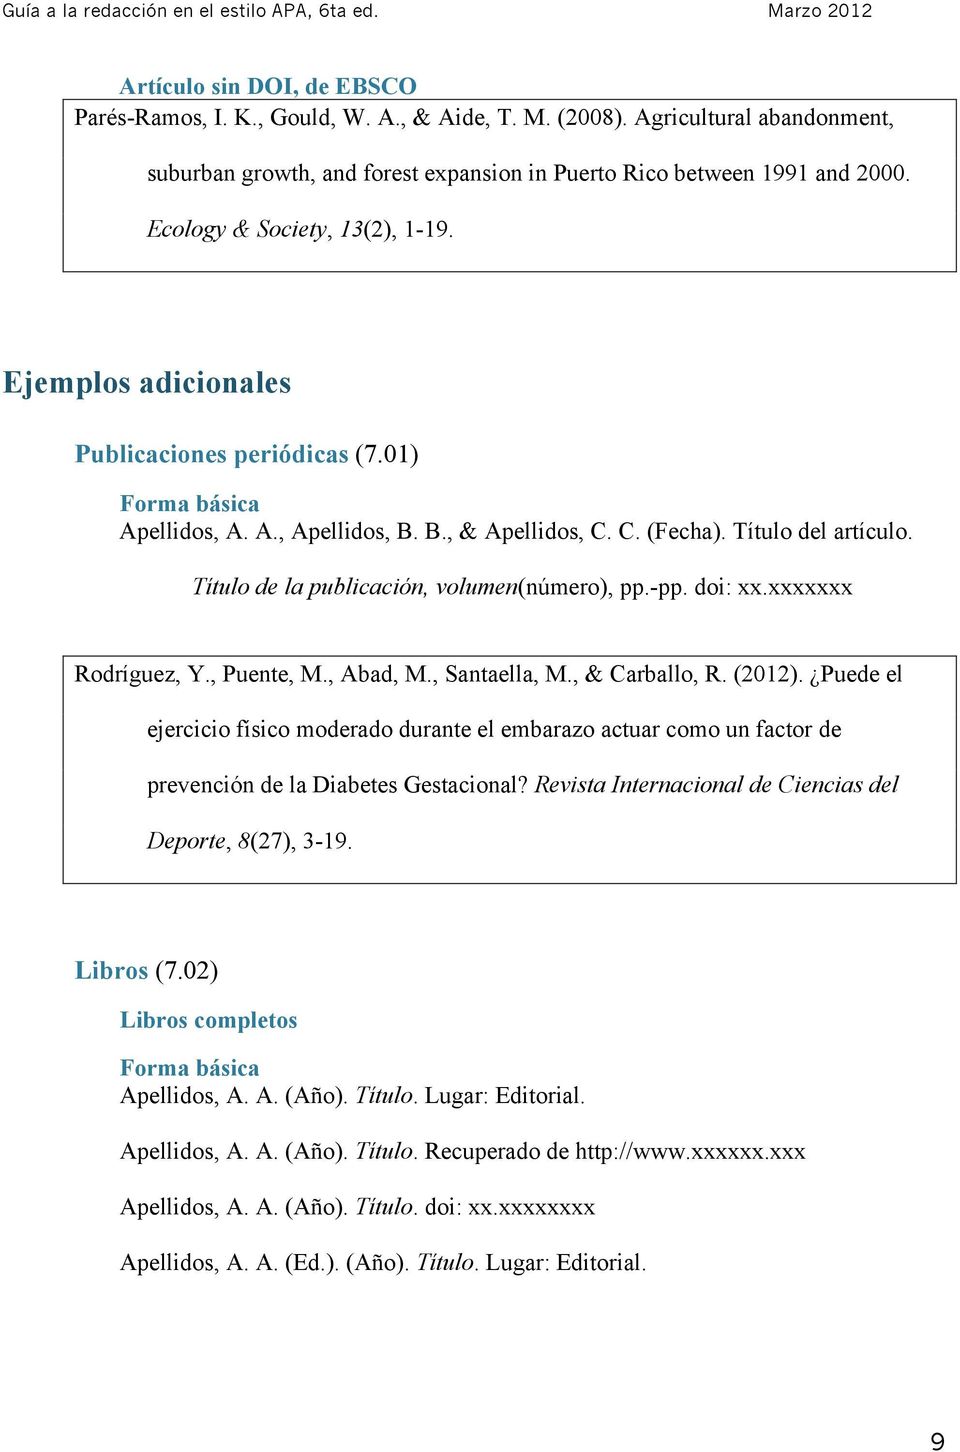 Título de la publicación, volumen(número), pp.-pp. doi: xx.xxxxxxx Rodríguez, Y., Puente, M., Abad, M., Santaella, M., & Carballo, R. (2012).